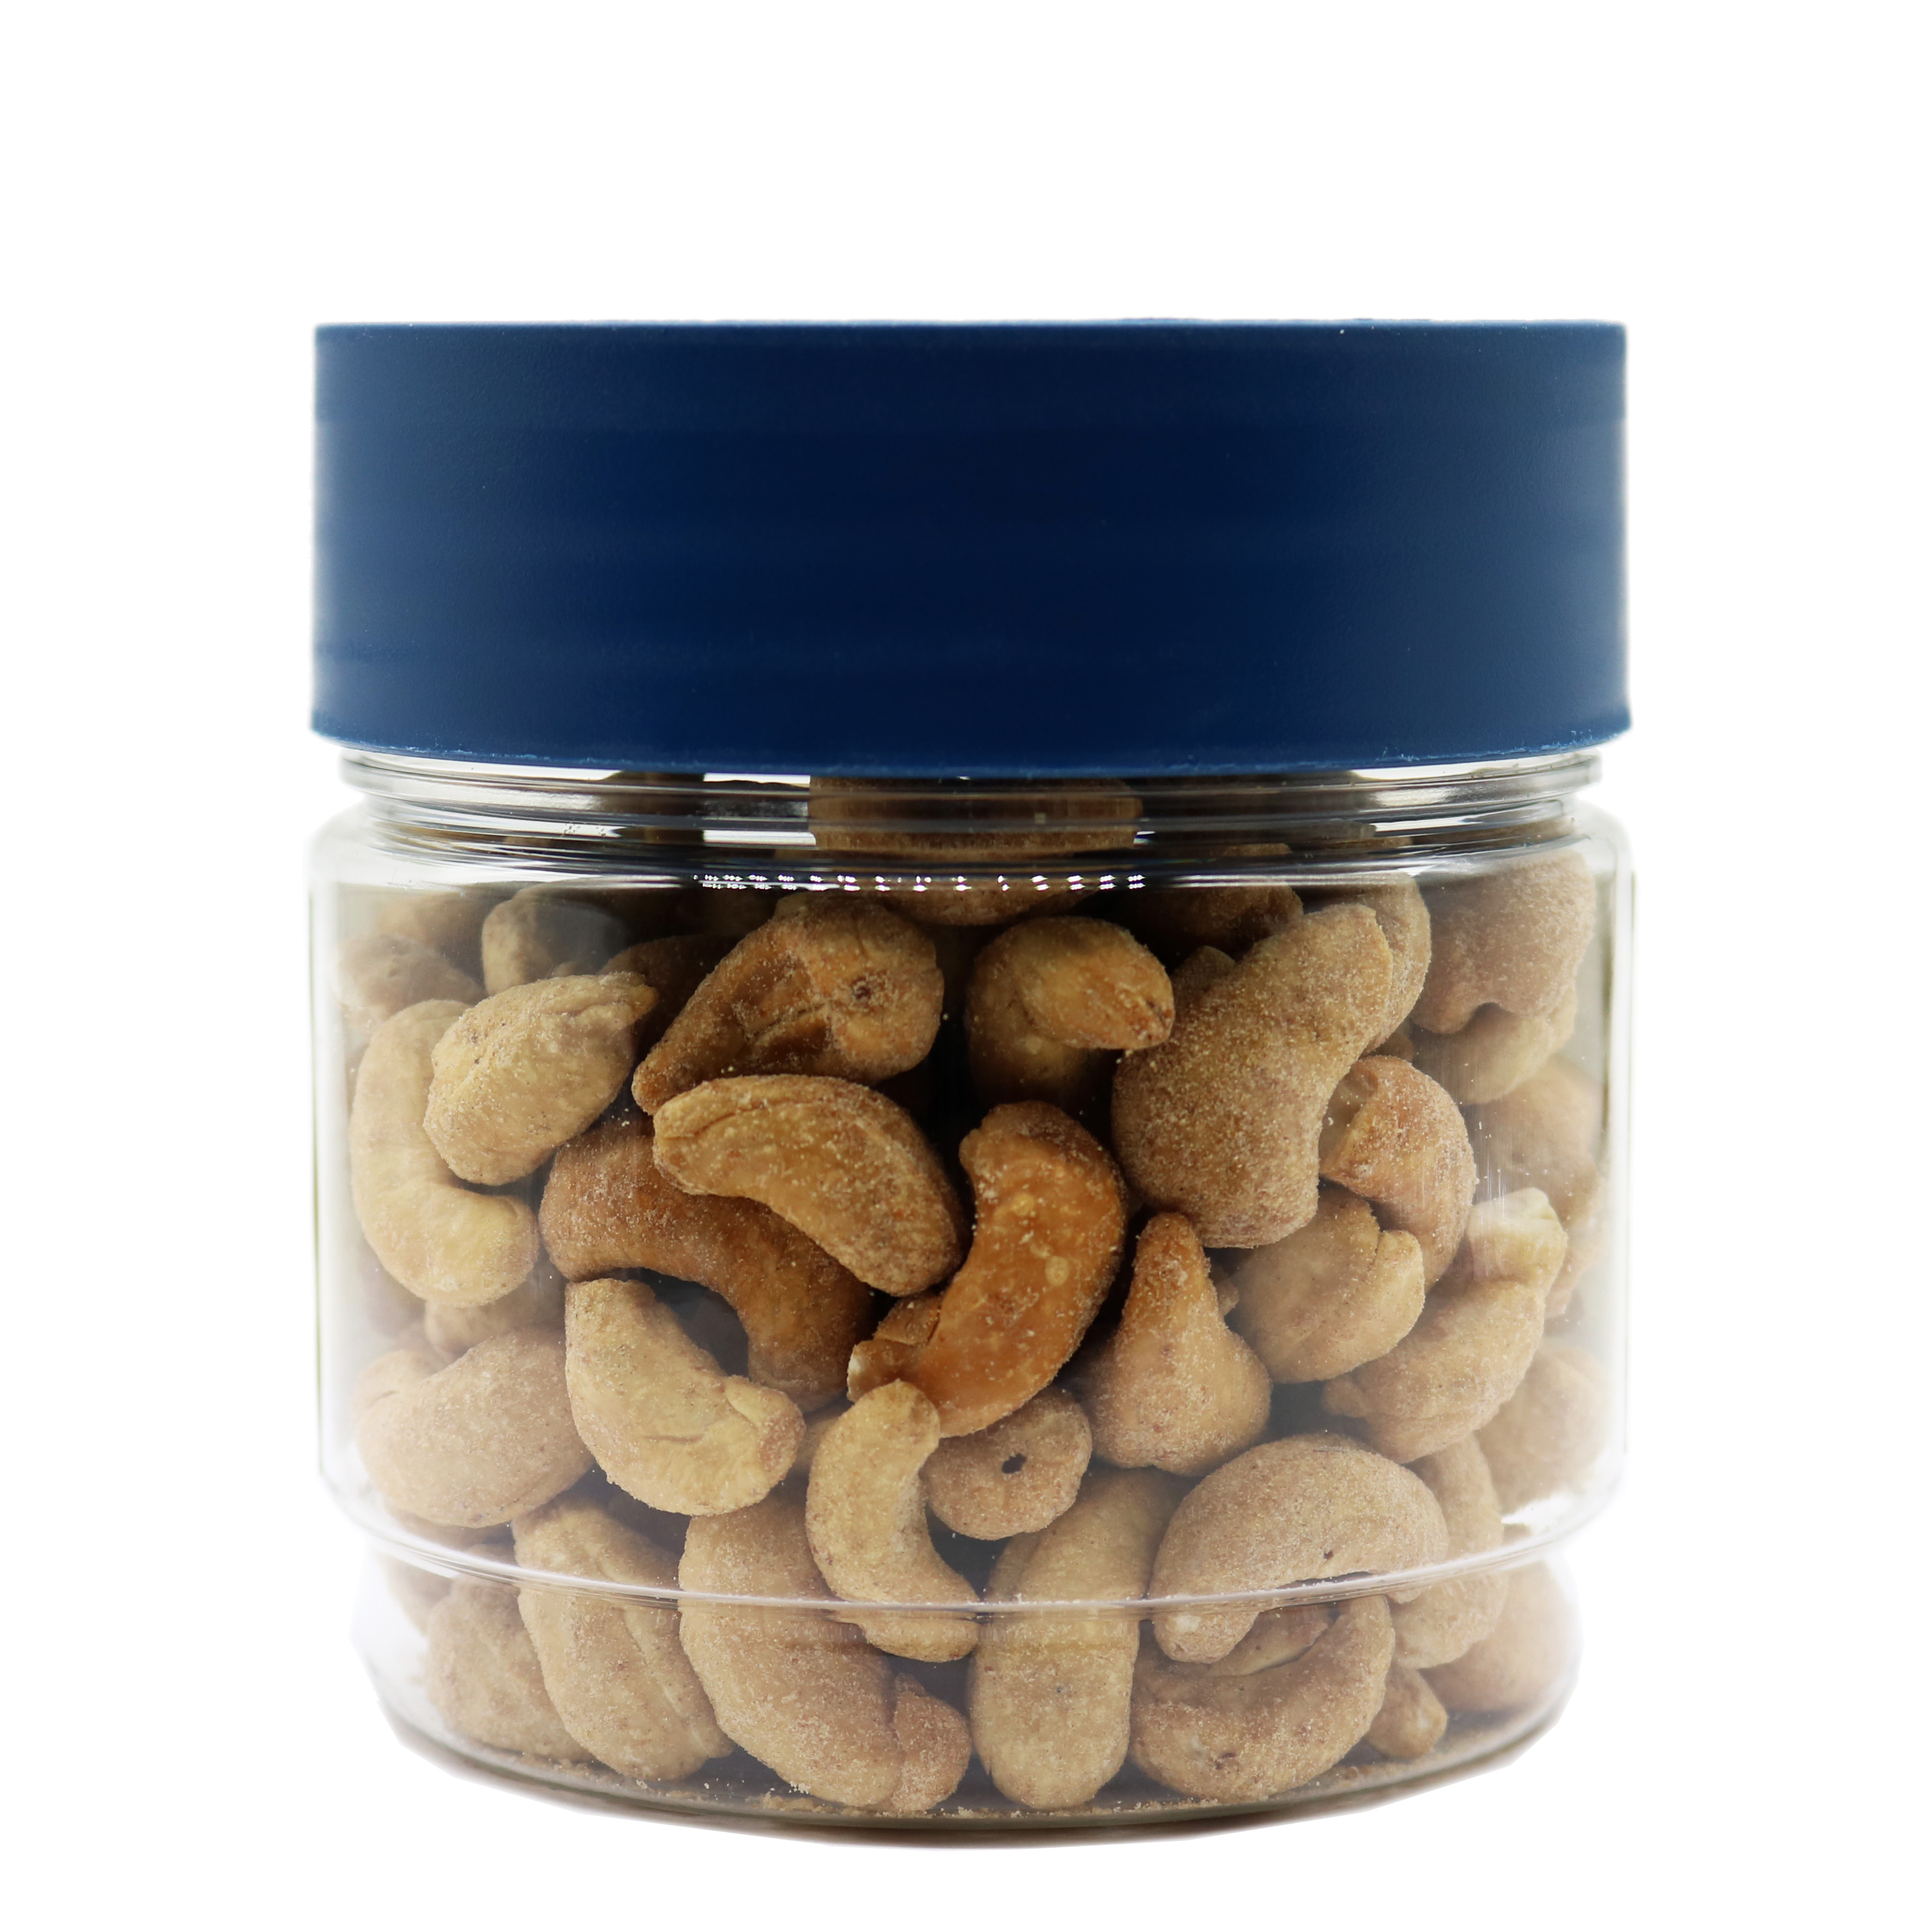 Hạt Điều Vị Tỏi 200g LAFOOCO Garlic Roasted Cashew Nuts